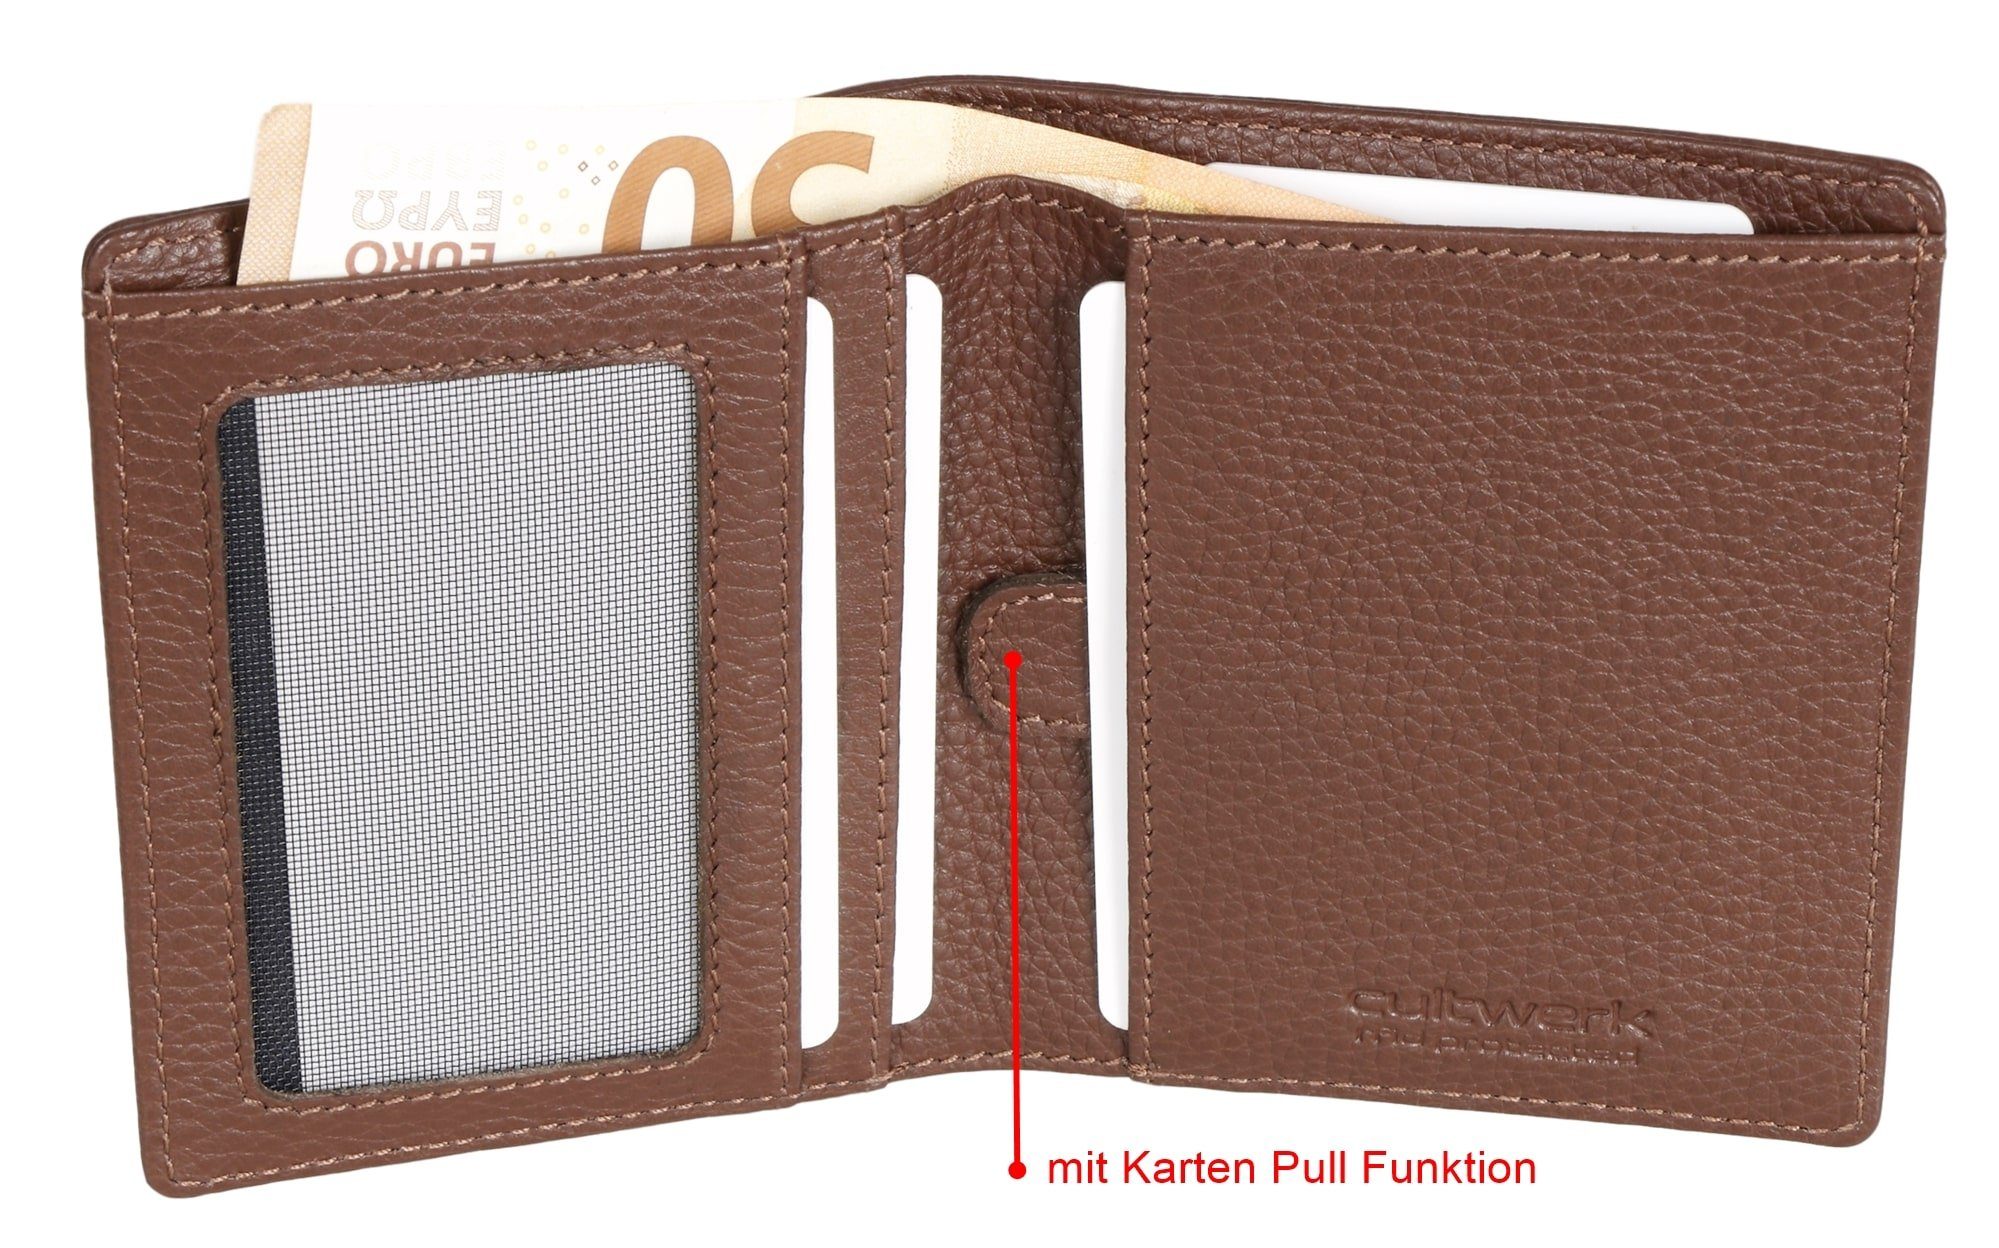 mit Brown Modell für aus Geldbörse Echtleder RFID-Schutz Pull Braun und Farbe 5 Bear mit Funktion Kartenfächern, IV Cultwerk Card Herren Braun-Espresso